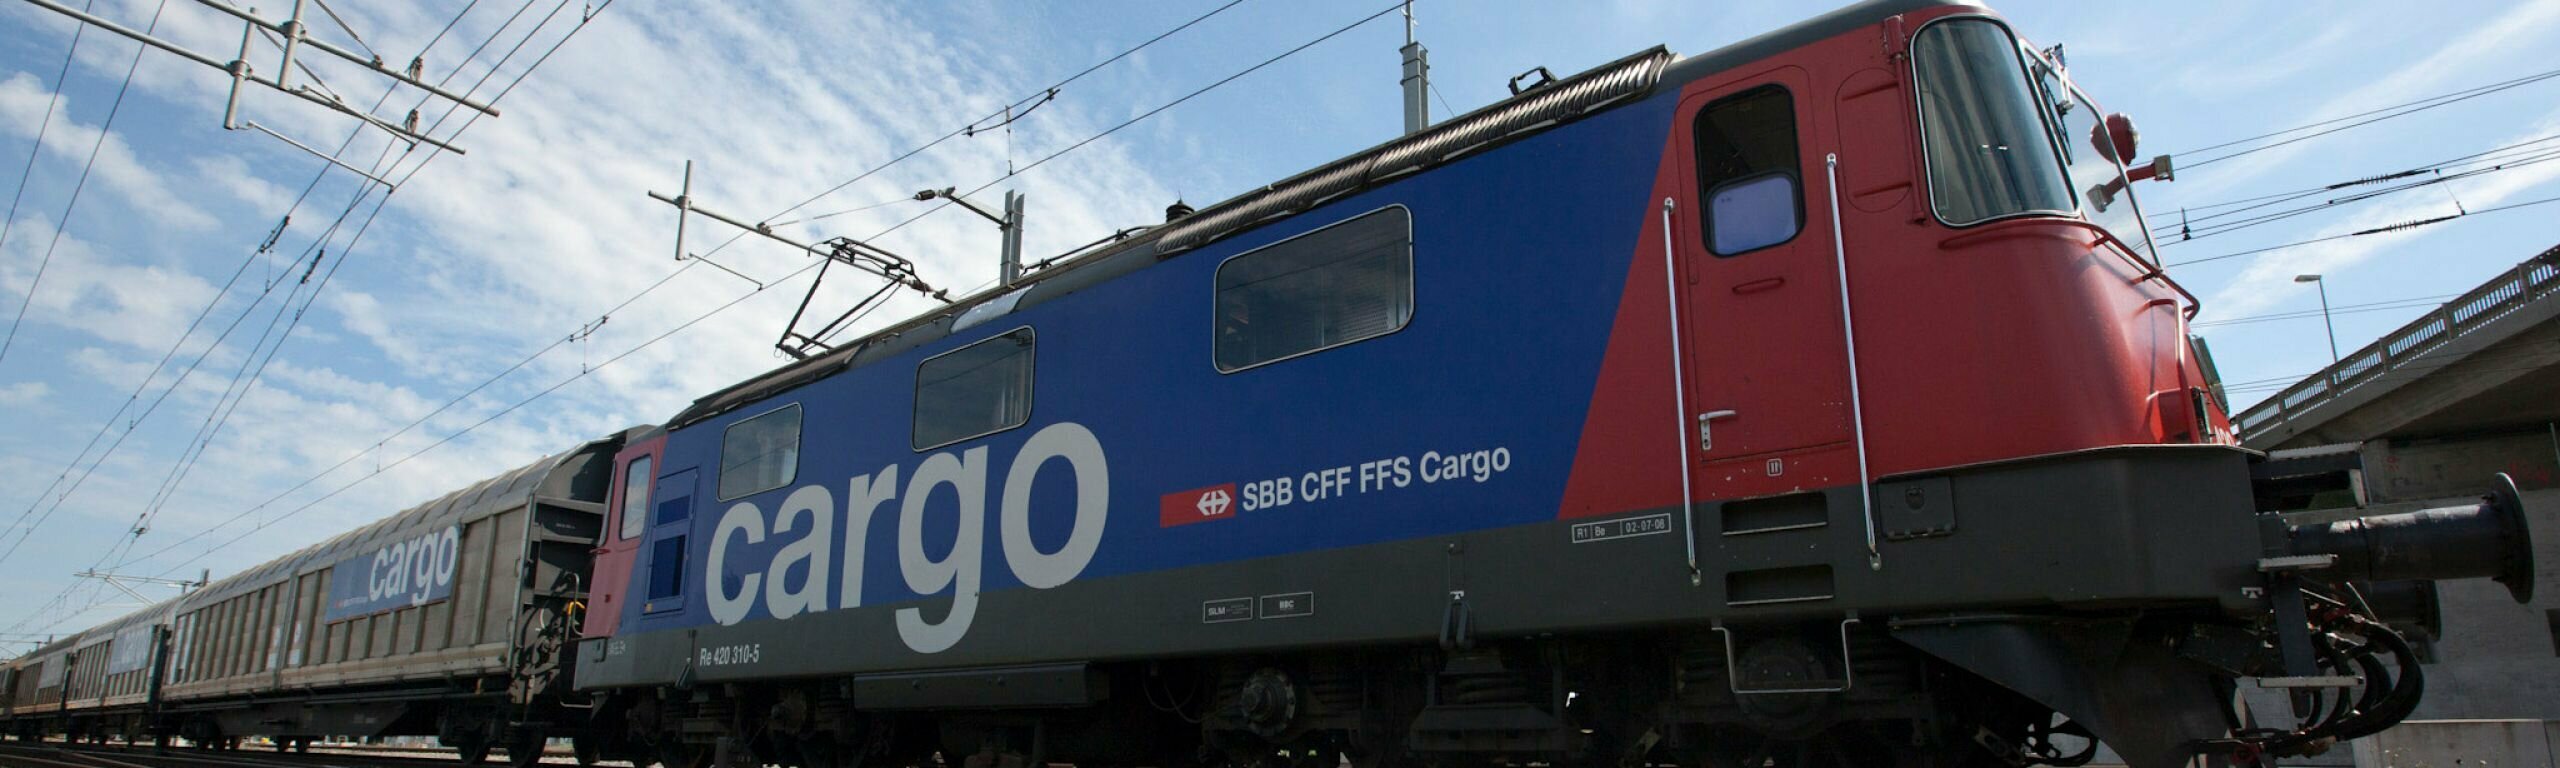 L’intérêt à un partenariat avec CFF Cargo dépasse les attentes